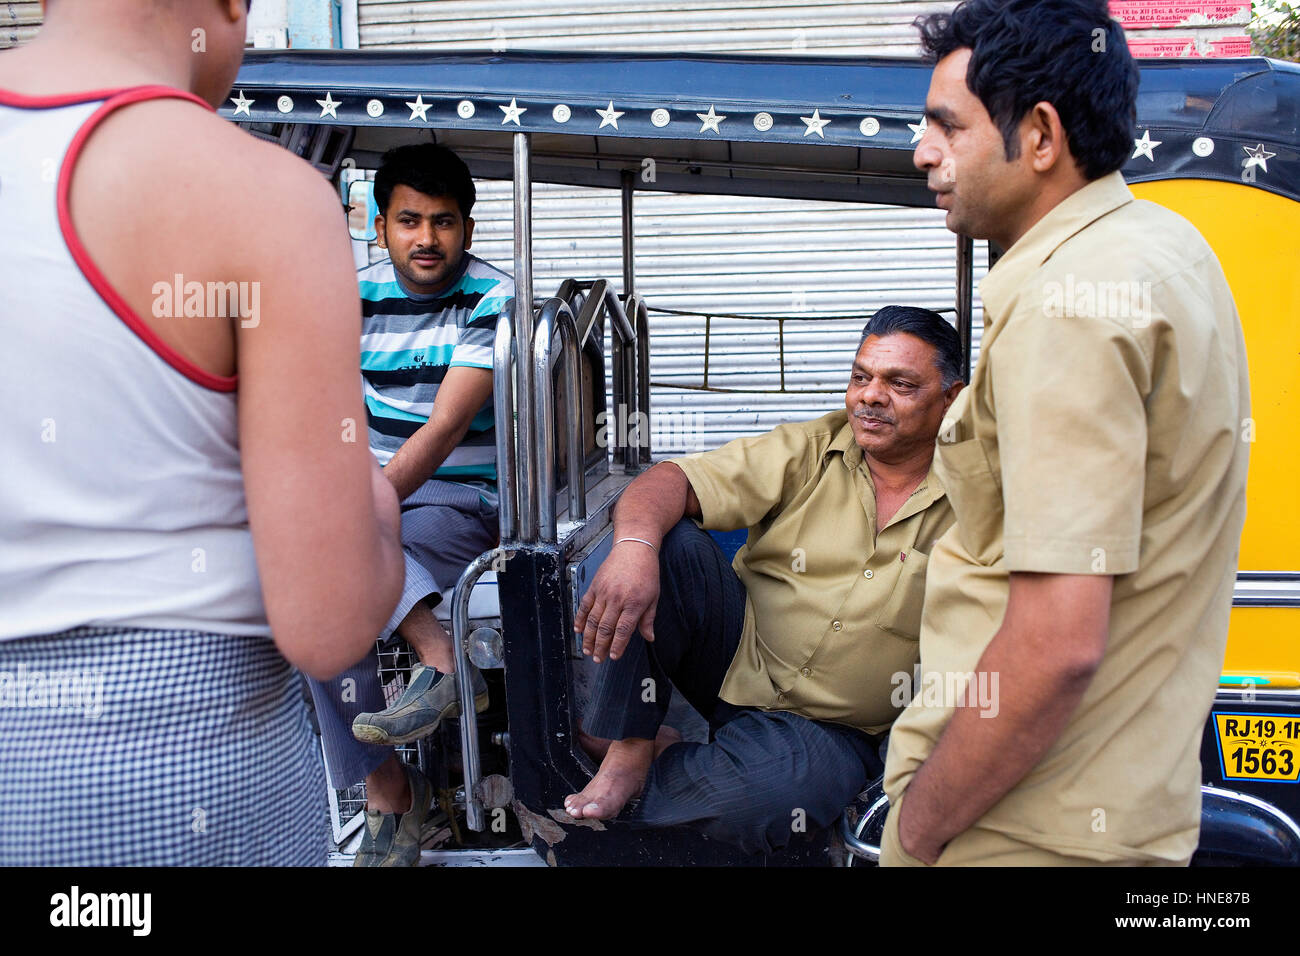 Drivers of Tuktuk taxi speaking,Jodhpur, Rajasthan, India Stock Photo